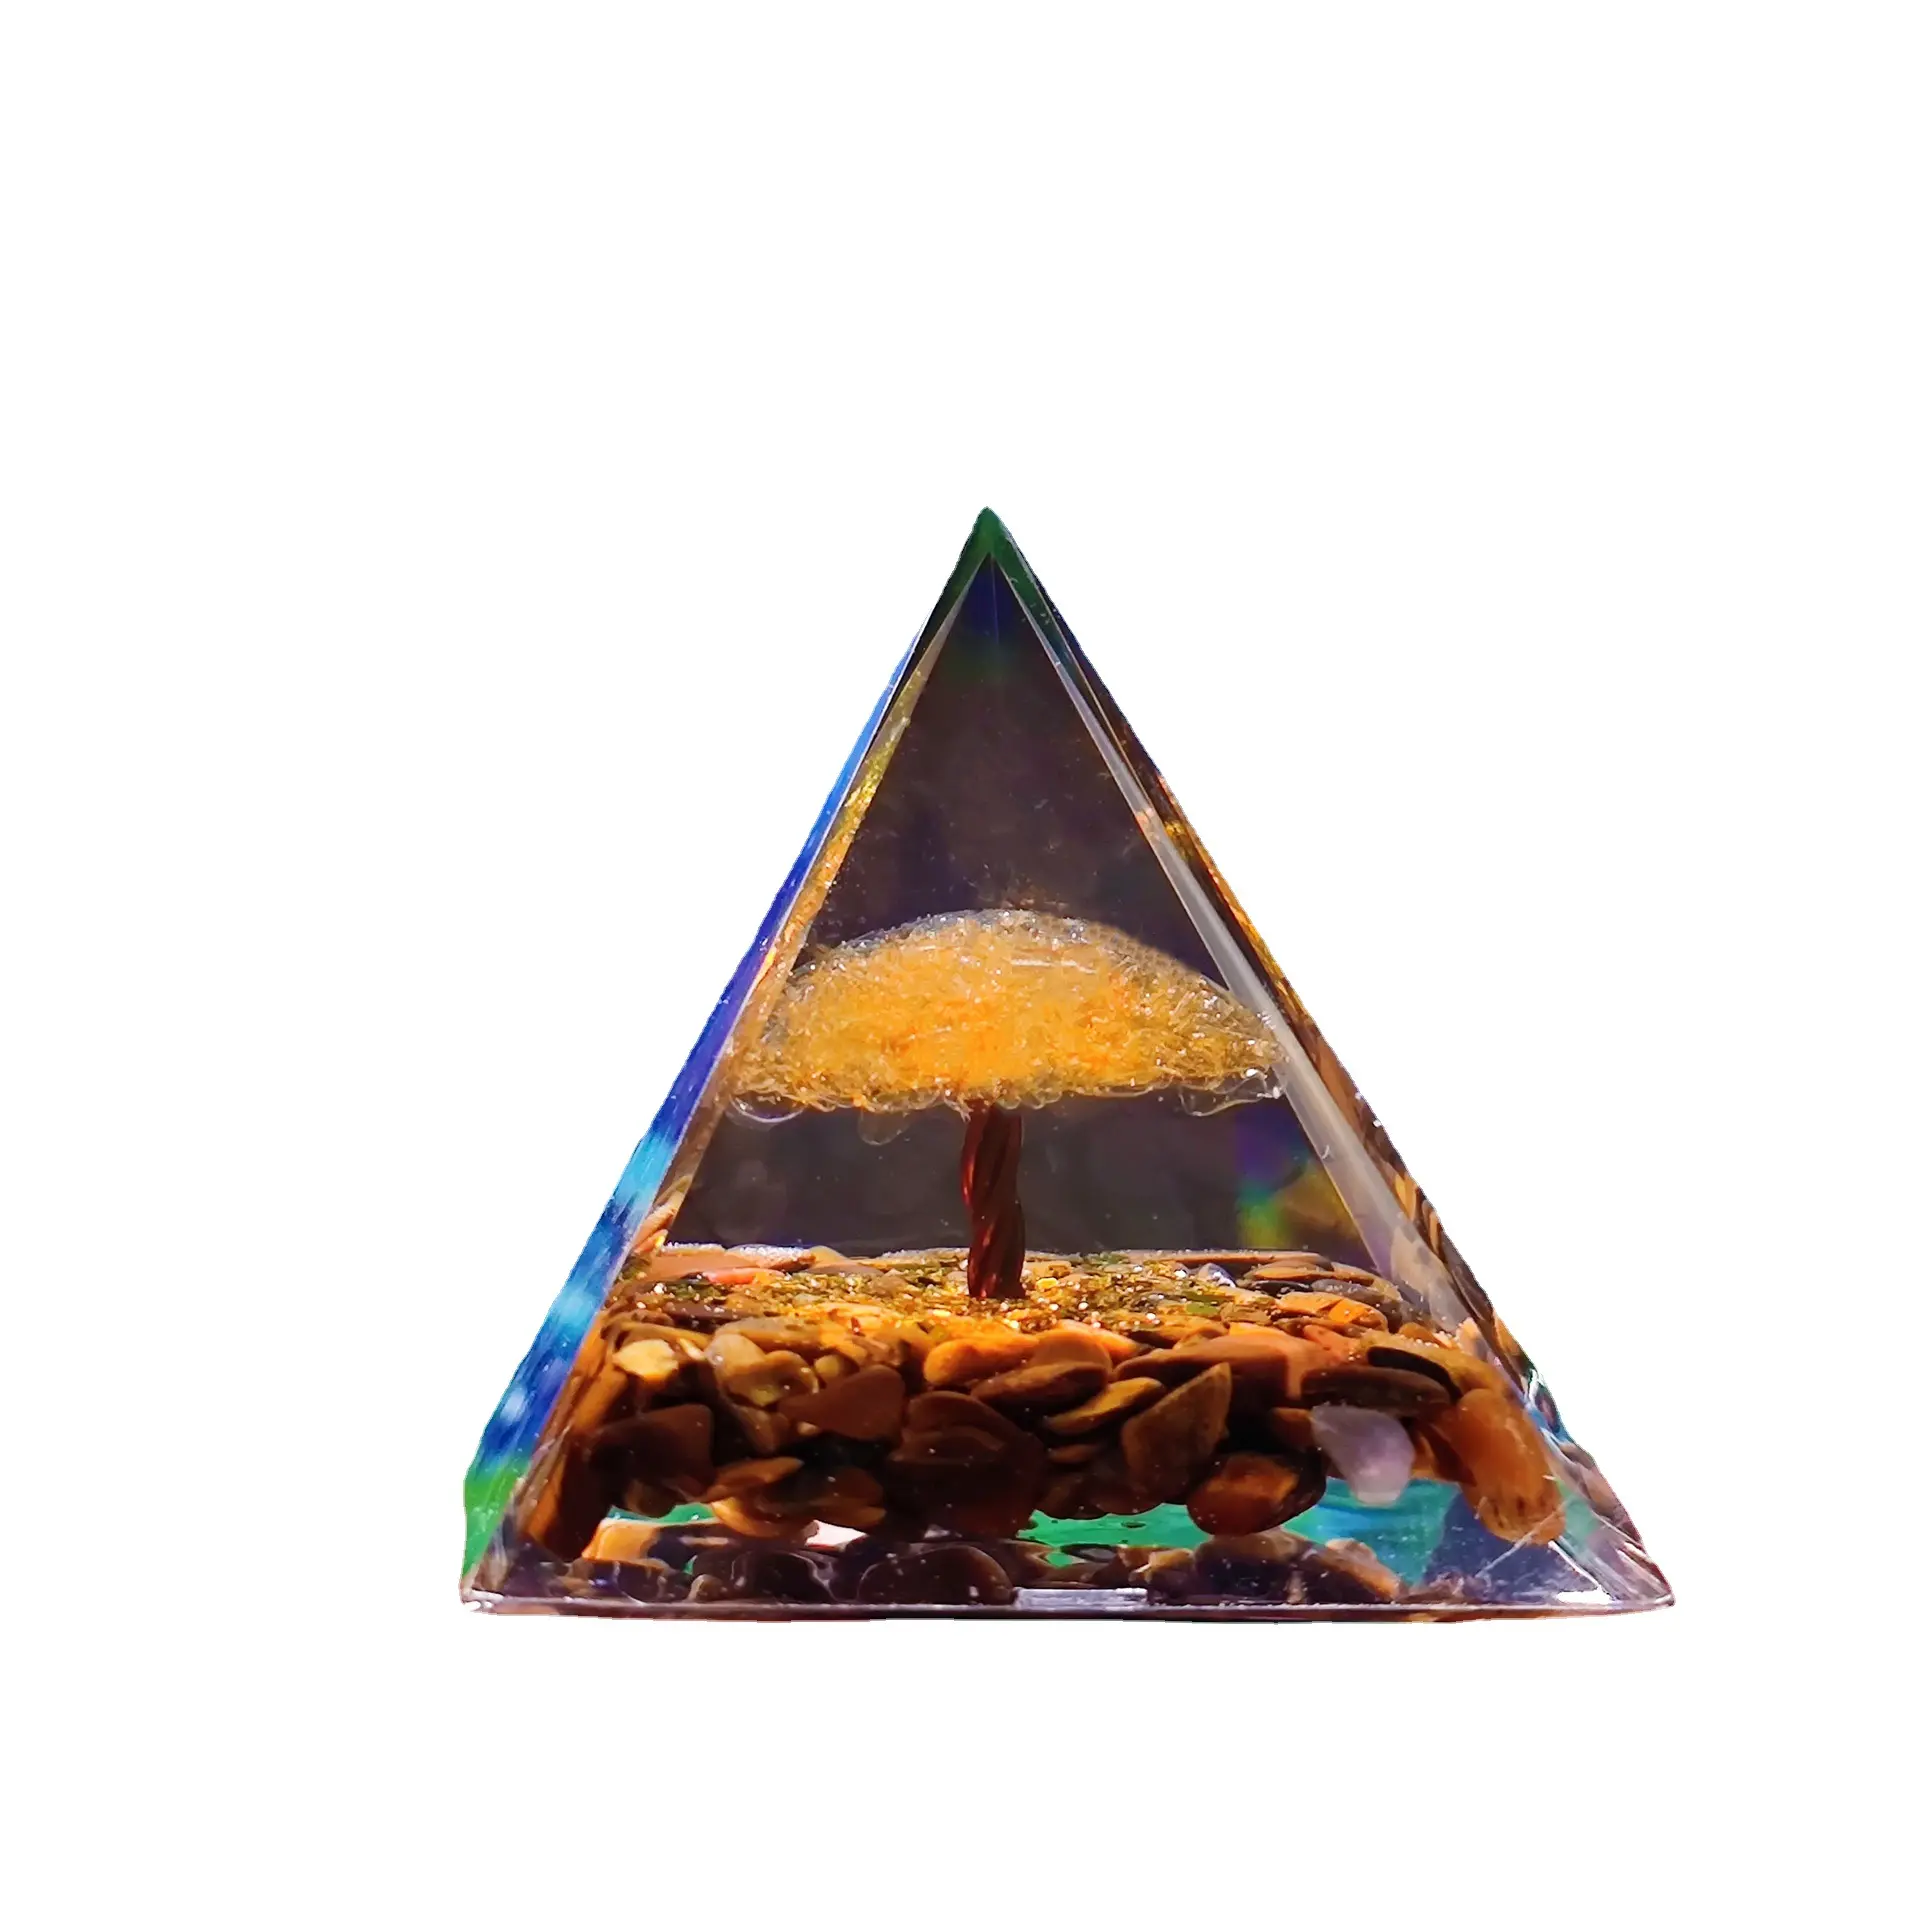 Commercio all'ingrosso di cristallo curativo naturale galleggiante Chakra Ball Pyramid ametista Orgonite Home Crafts Balls Protection Meditation Gift